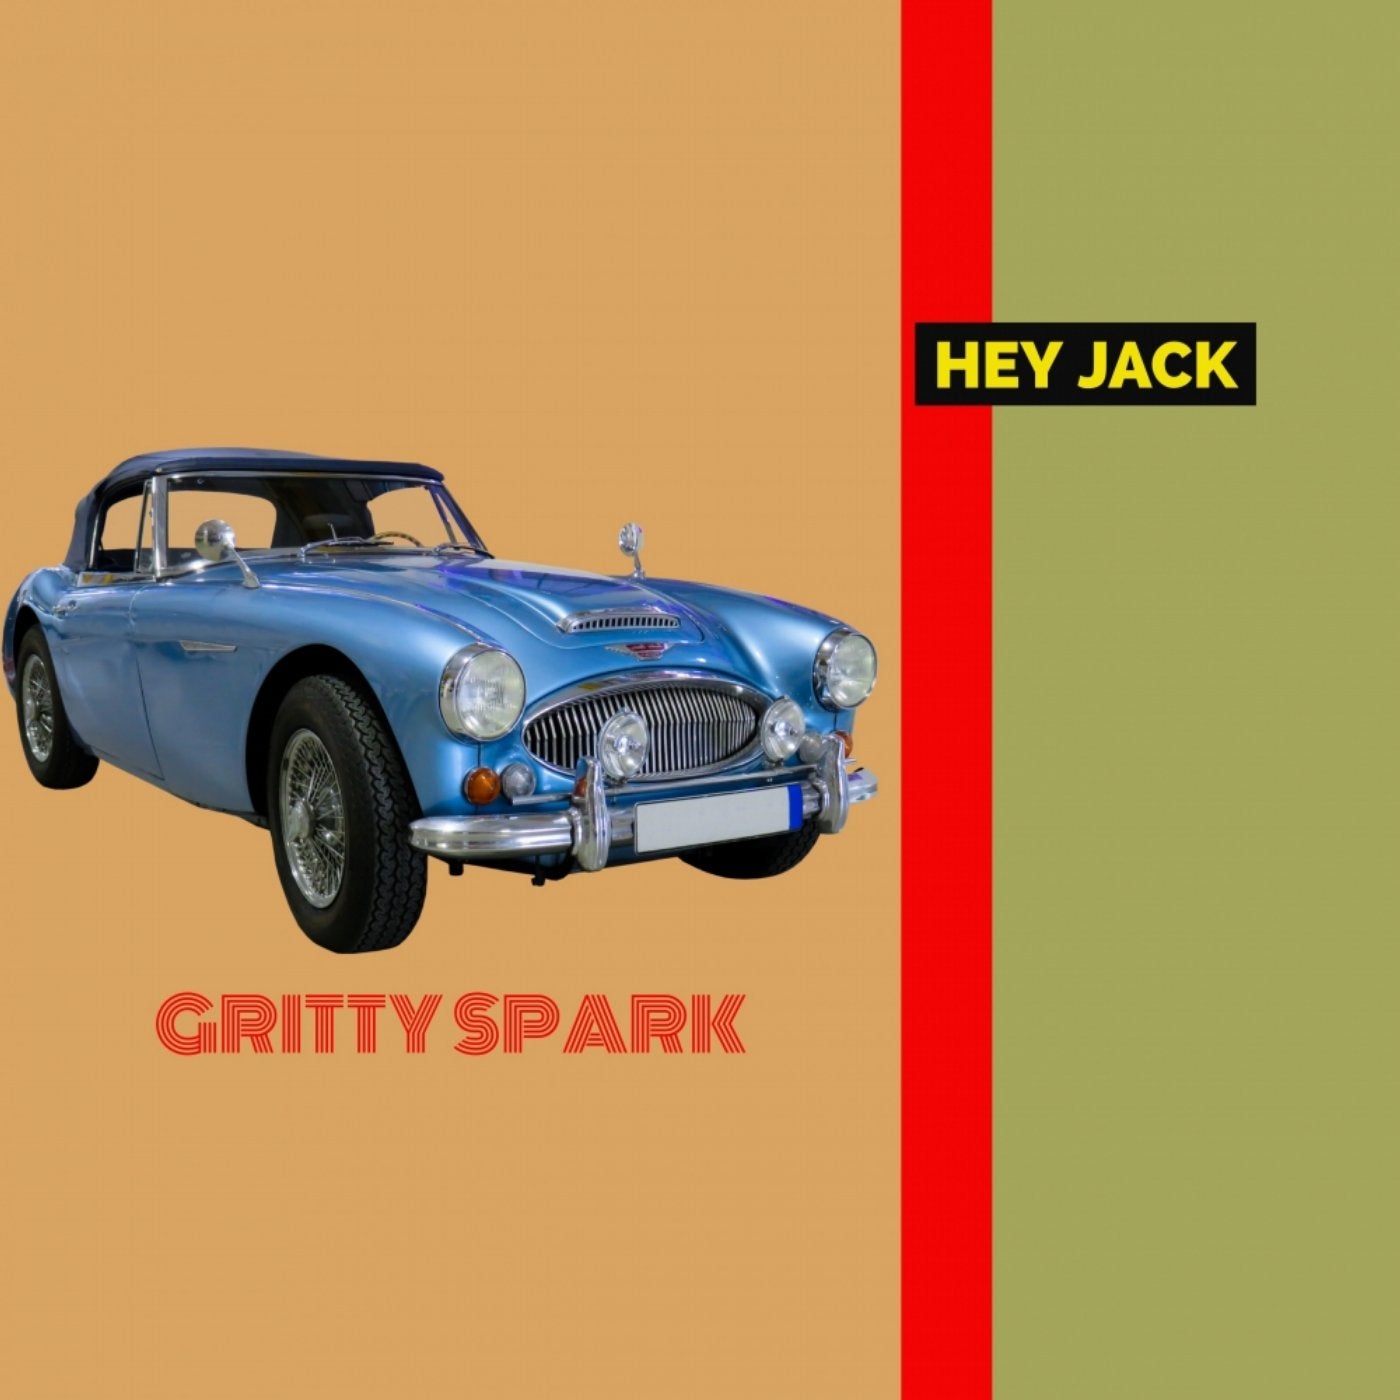 Gritty Spark